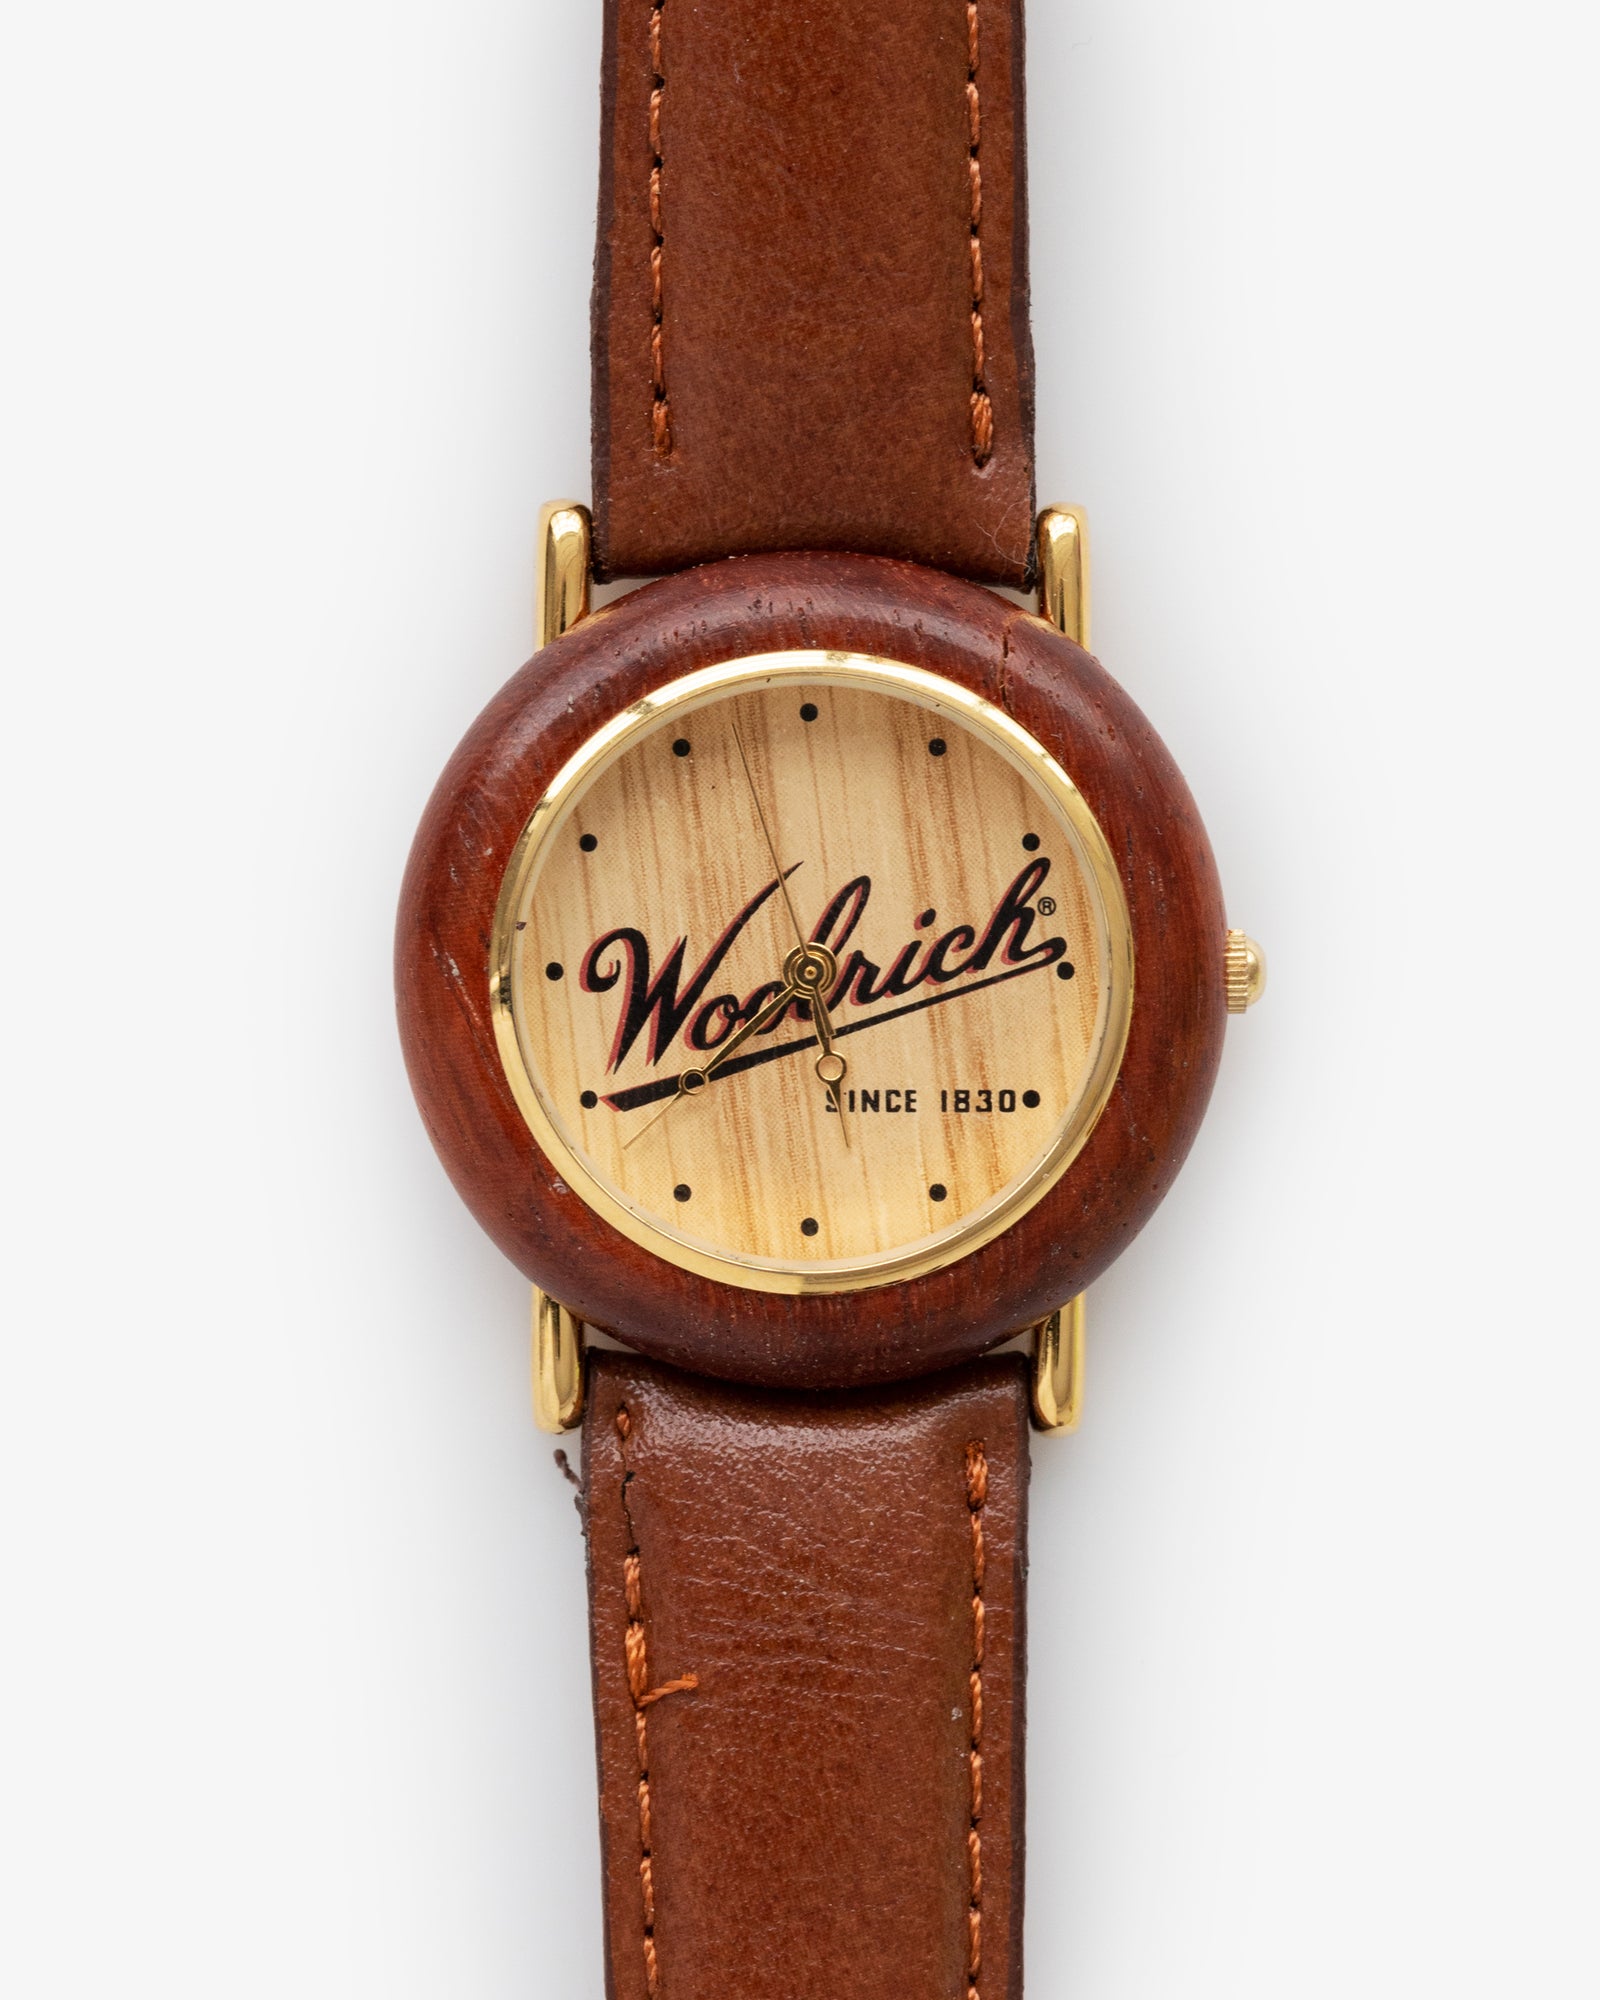 Vintage Woolrich Watch